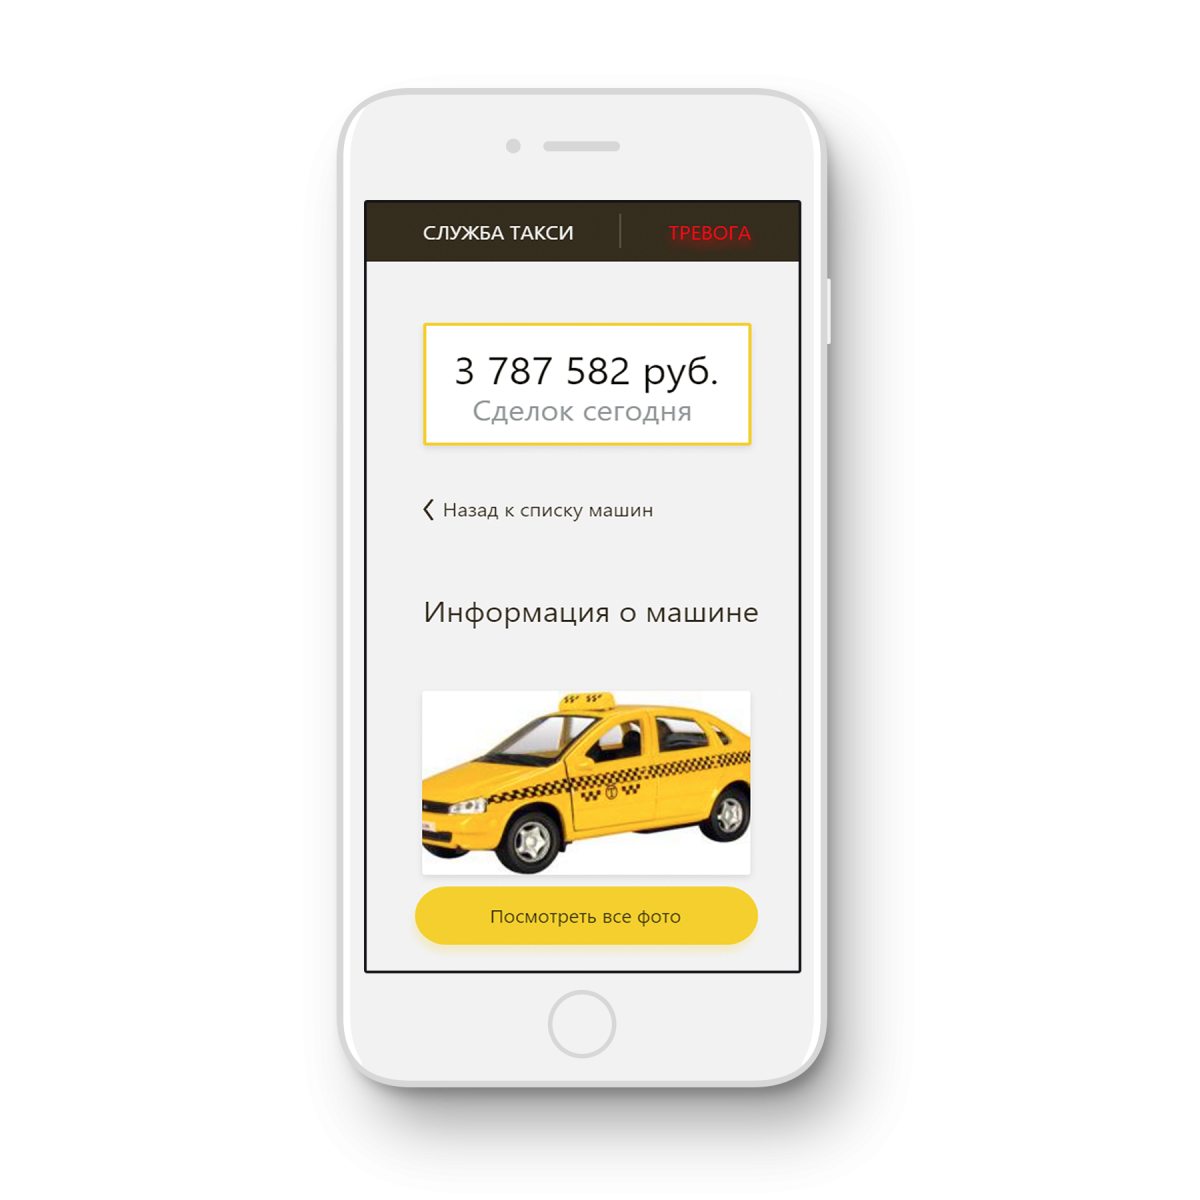 Единый телефон такси. Приложение такси. Реклама приложения такси. Мобильное приложение такси.